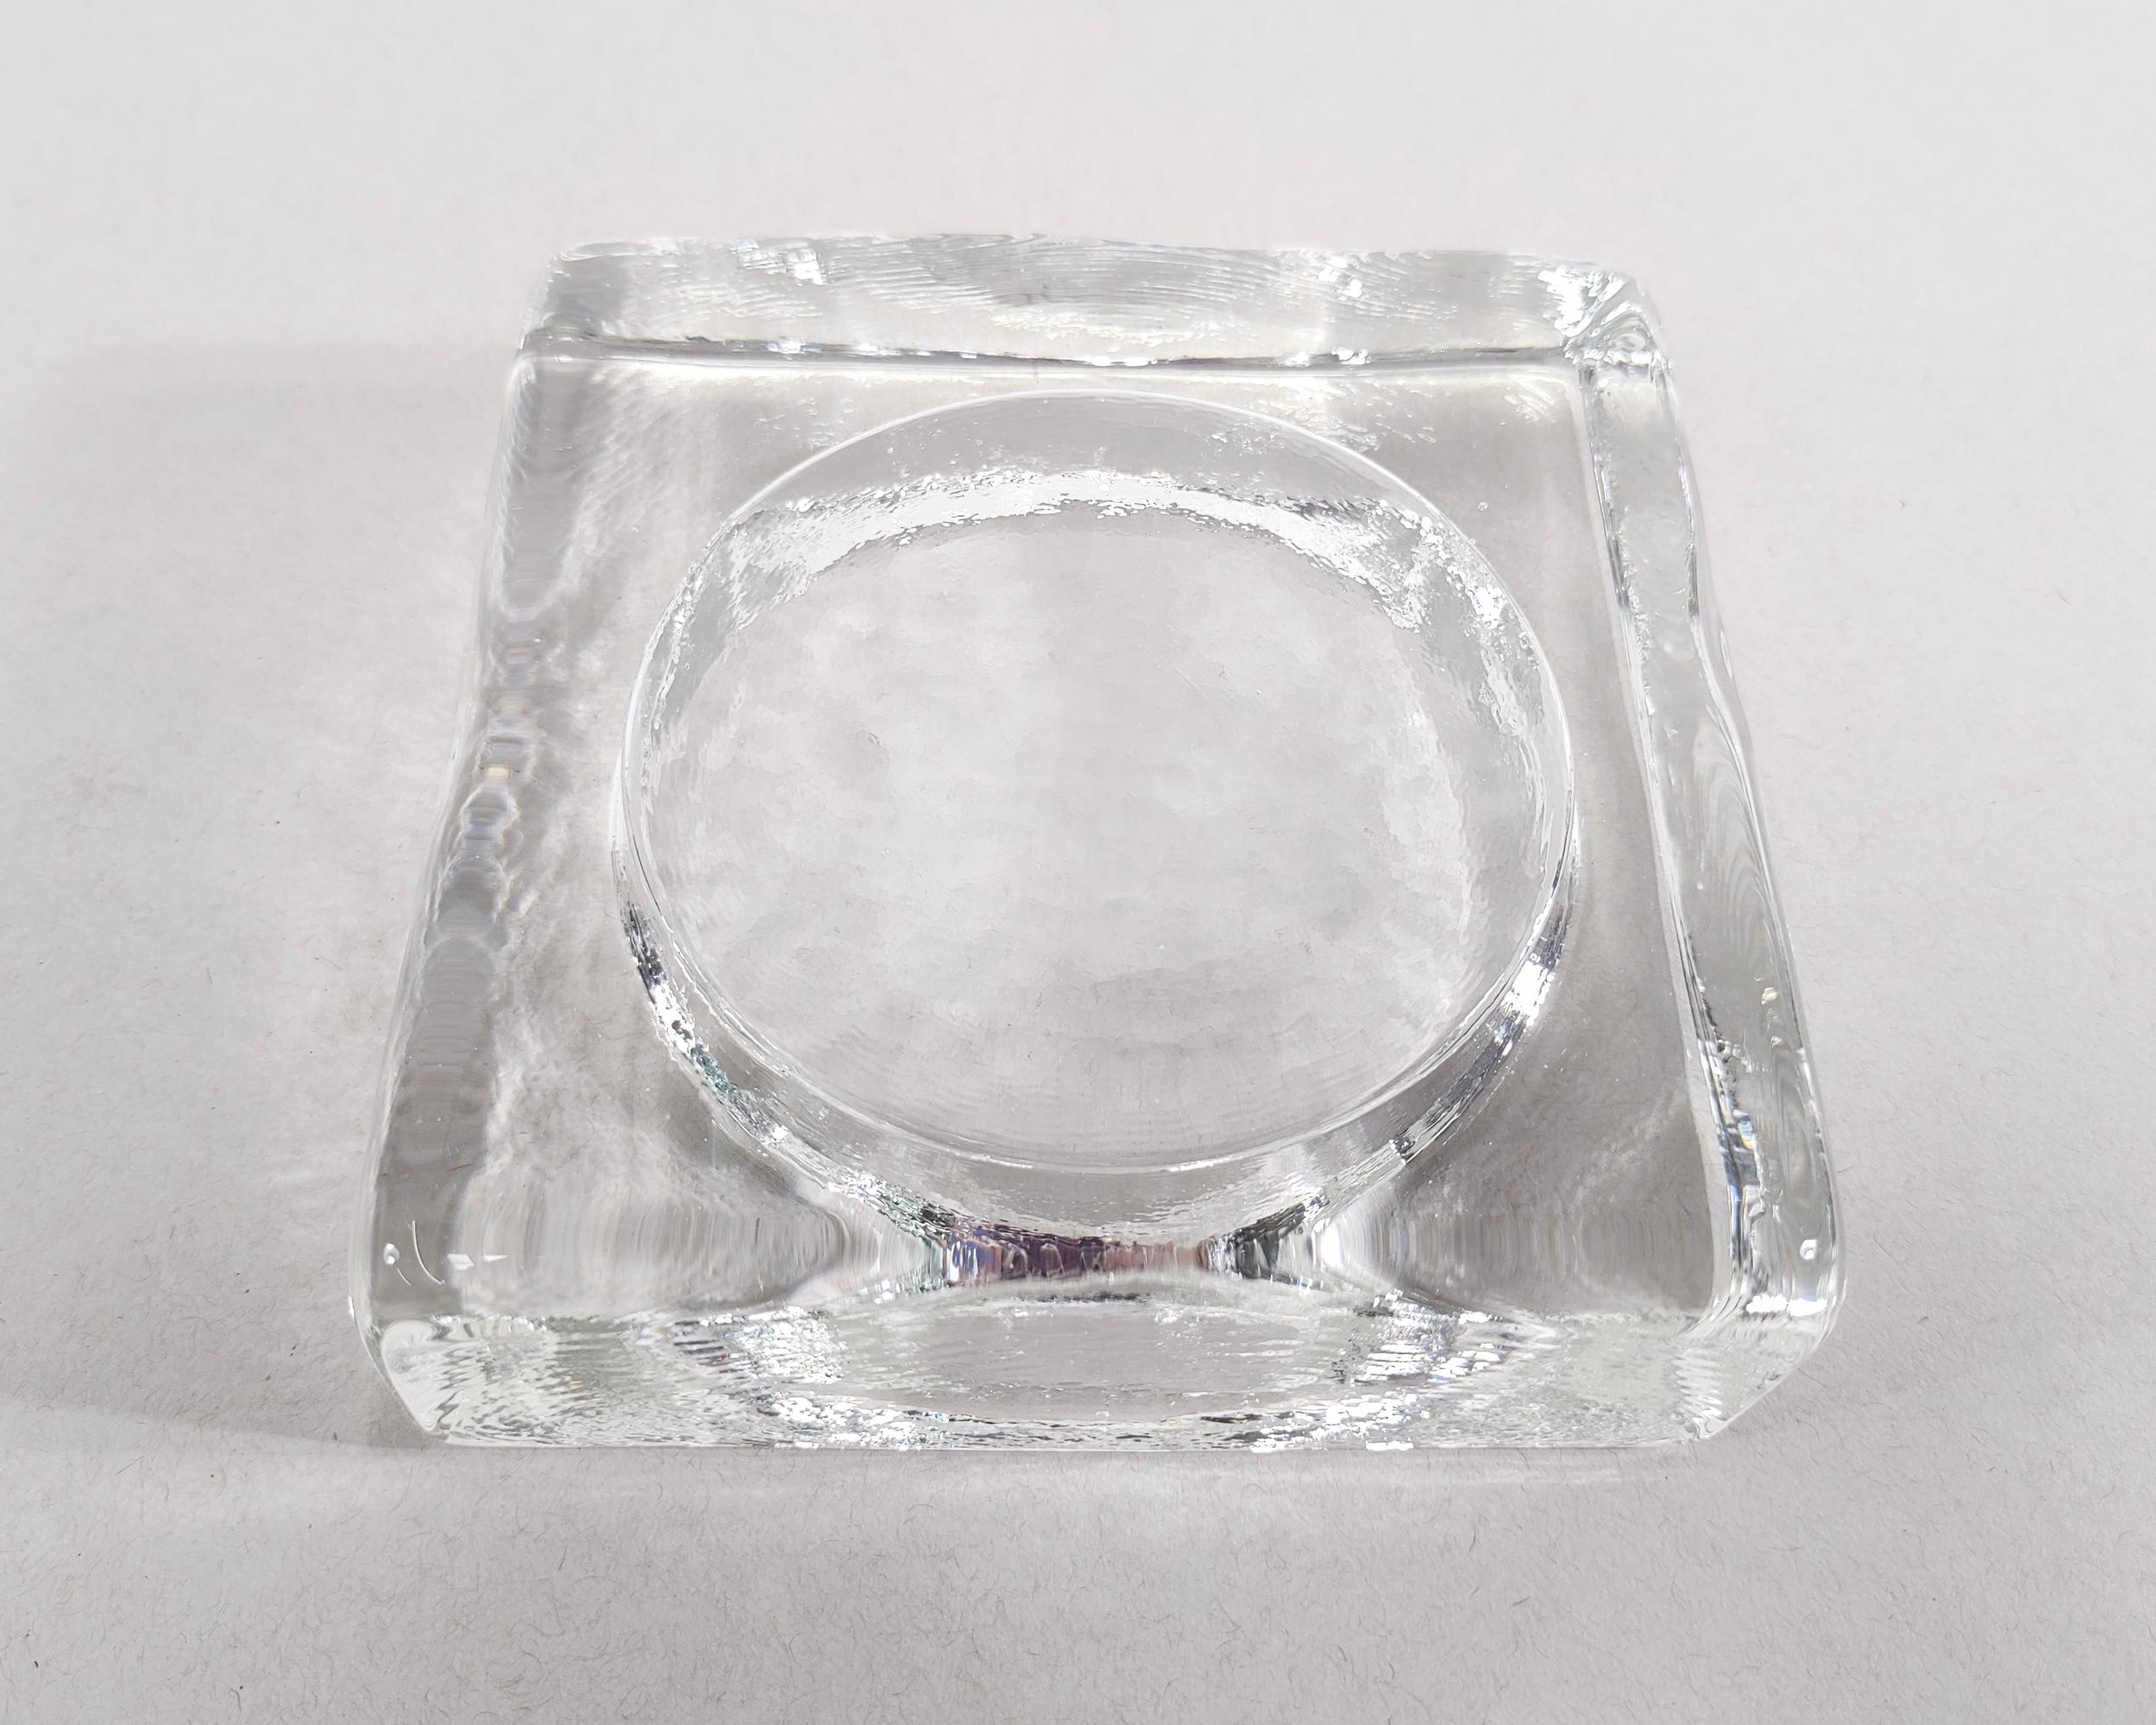 Quadratischer Auffangbehälter aus organischem Glas. Wunderschöne wellenförmige Gussdetails verleihen ihm eine eisige Ausstrahlung. Ausgezeichneter Vintage-Zustand